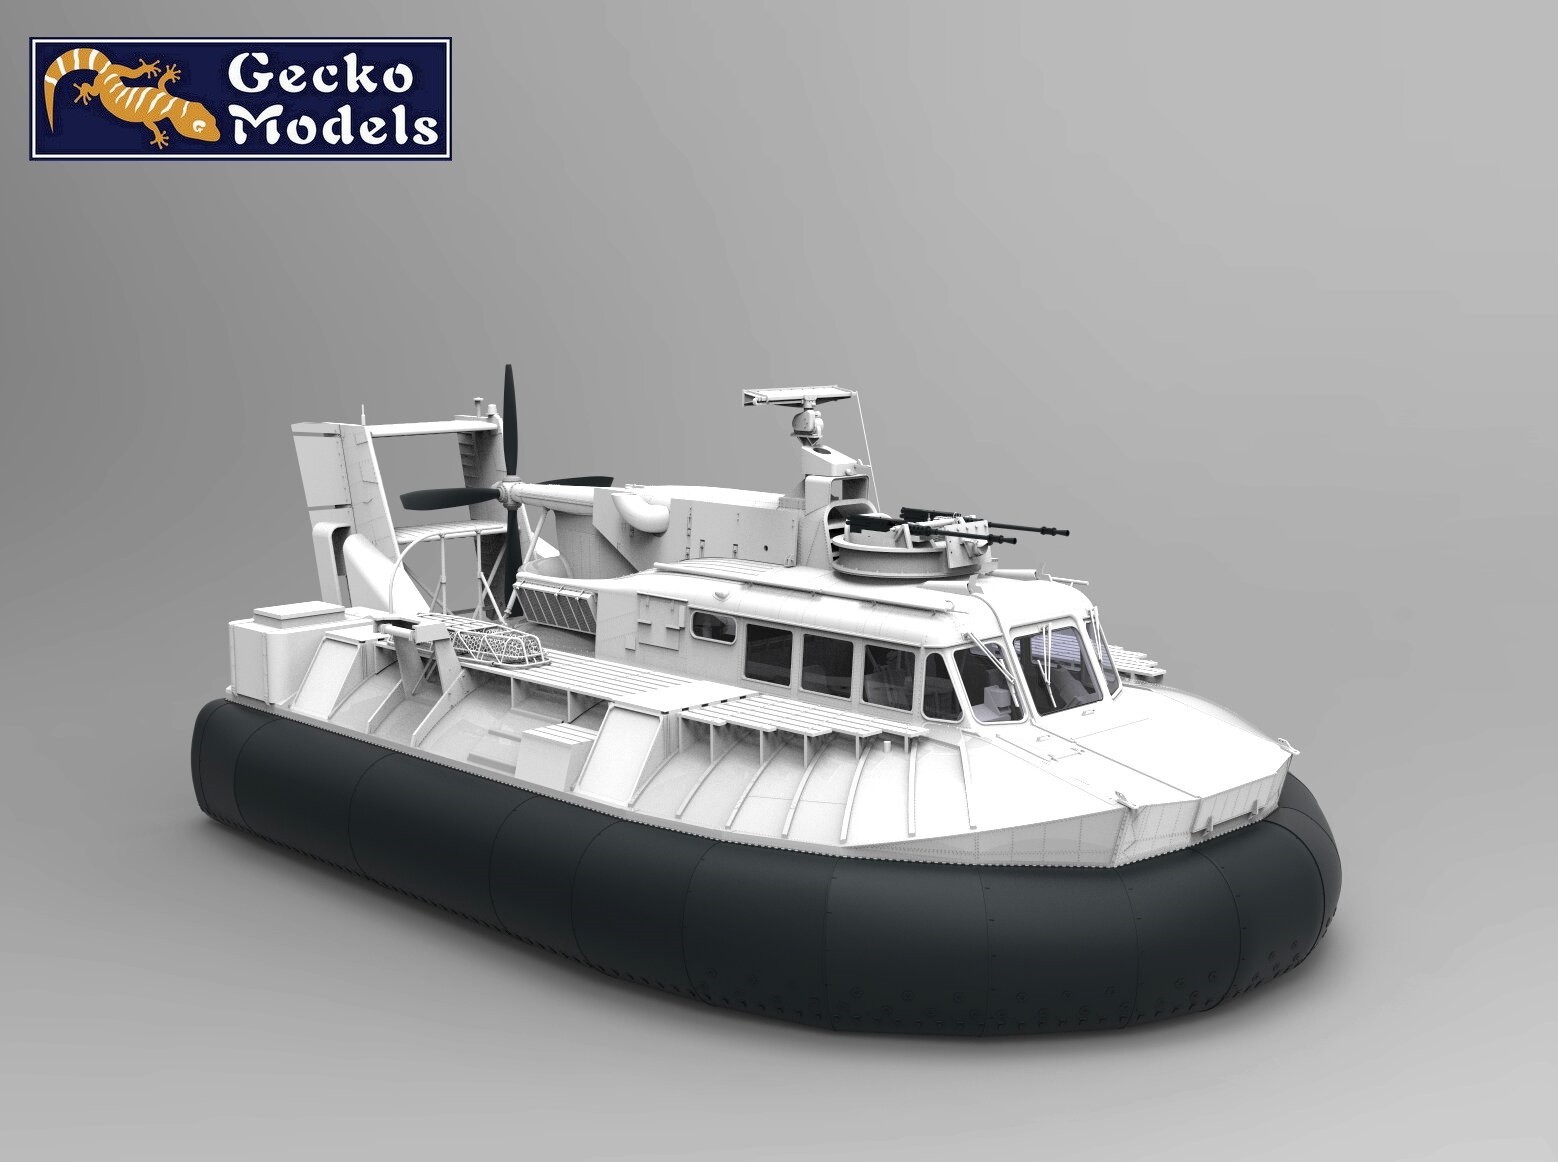 Gecko Models Announces Unique 1/35 Scale SK-5 PACV Model CAD-4